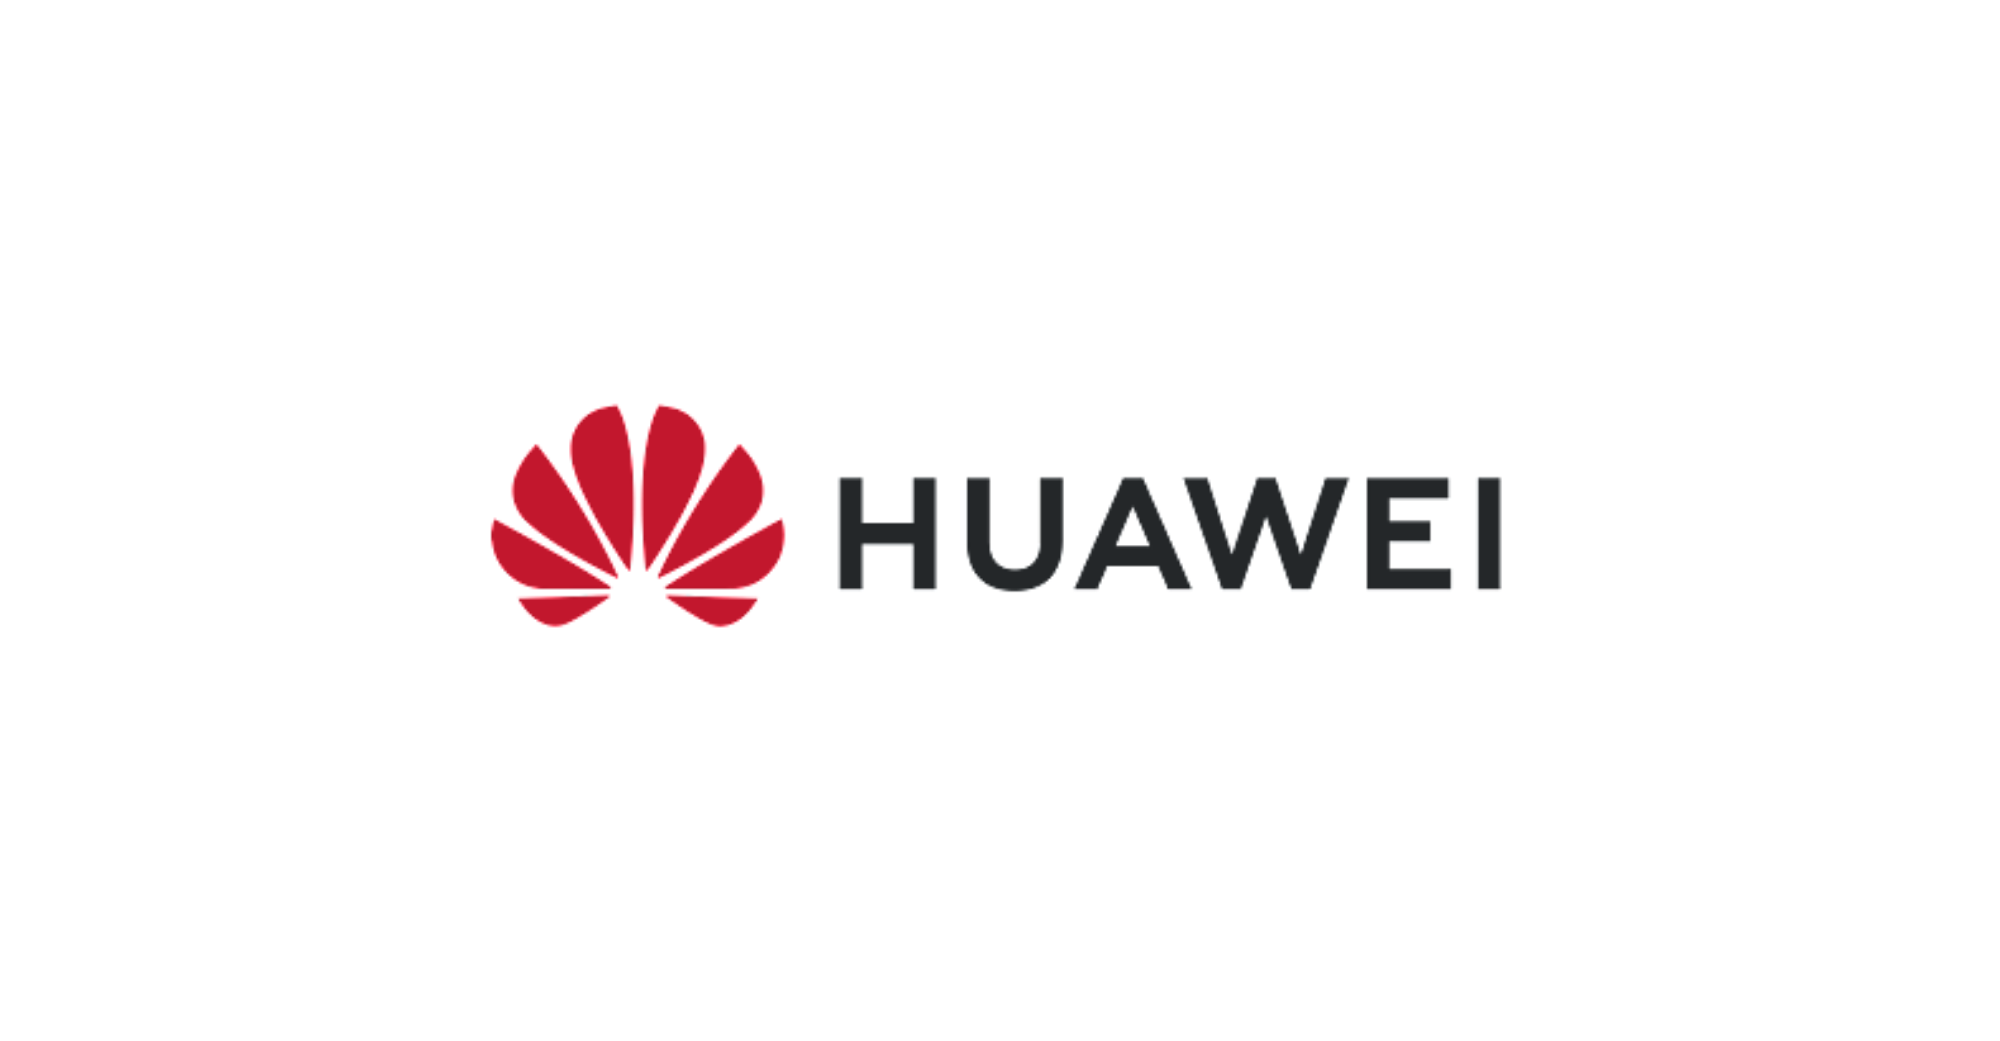 Namuhunan ang Huawei sa paggawa ng aparato ng semiconductor, photoresist at mga materyales na semiconductor ng third-generation